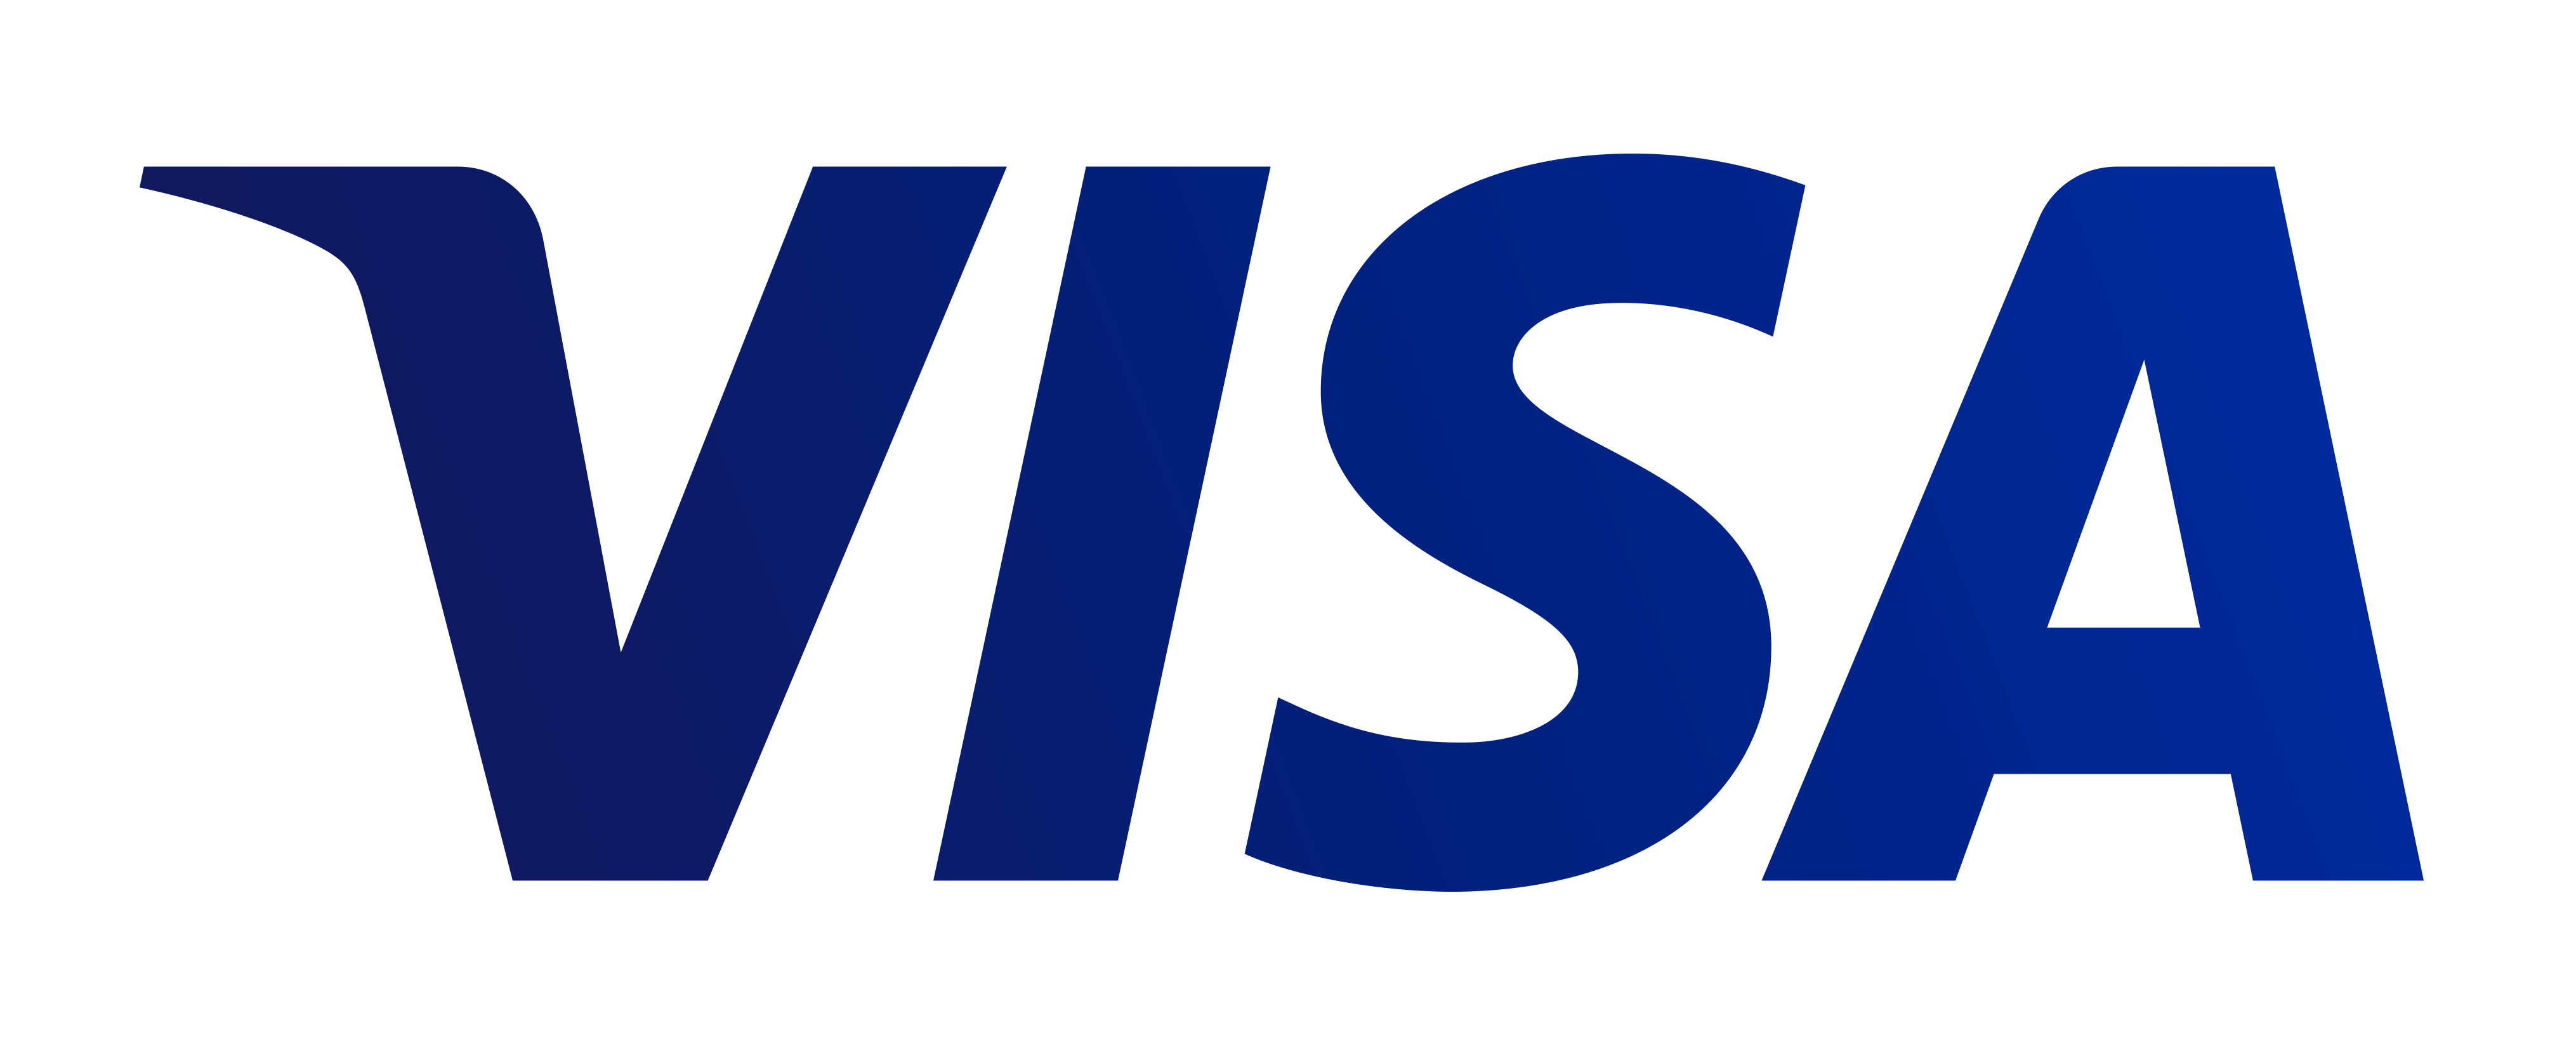 Moyen de paiement Visa